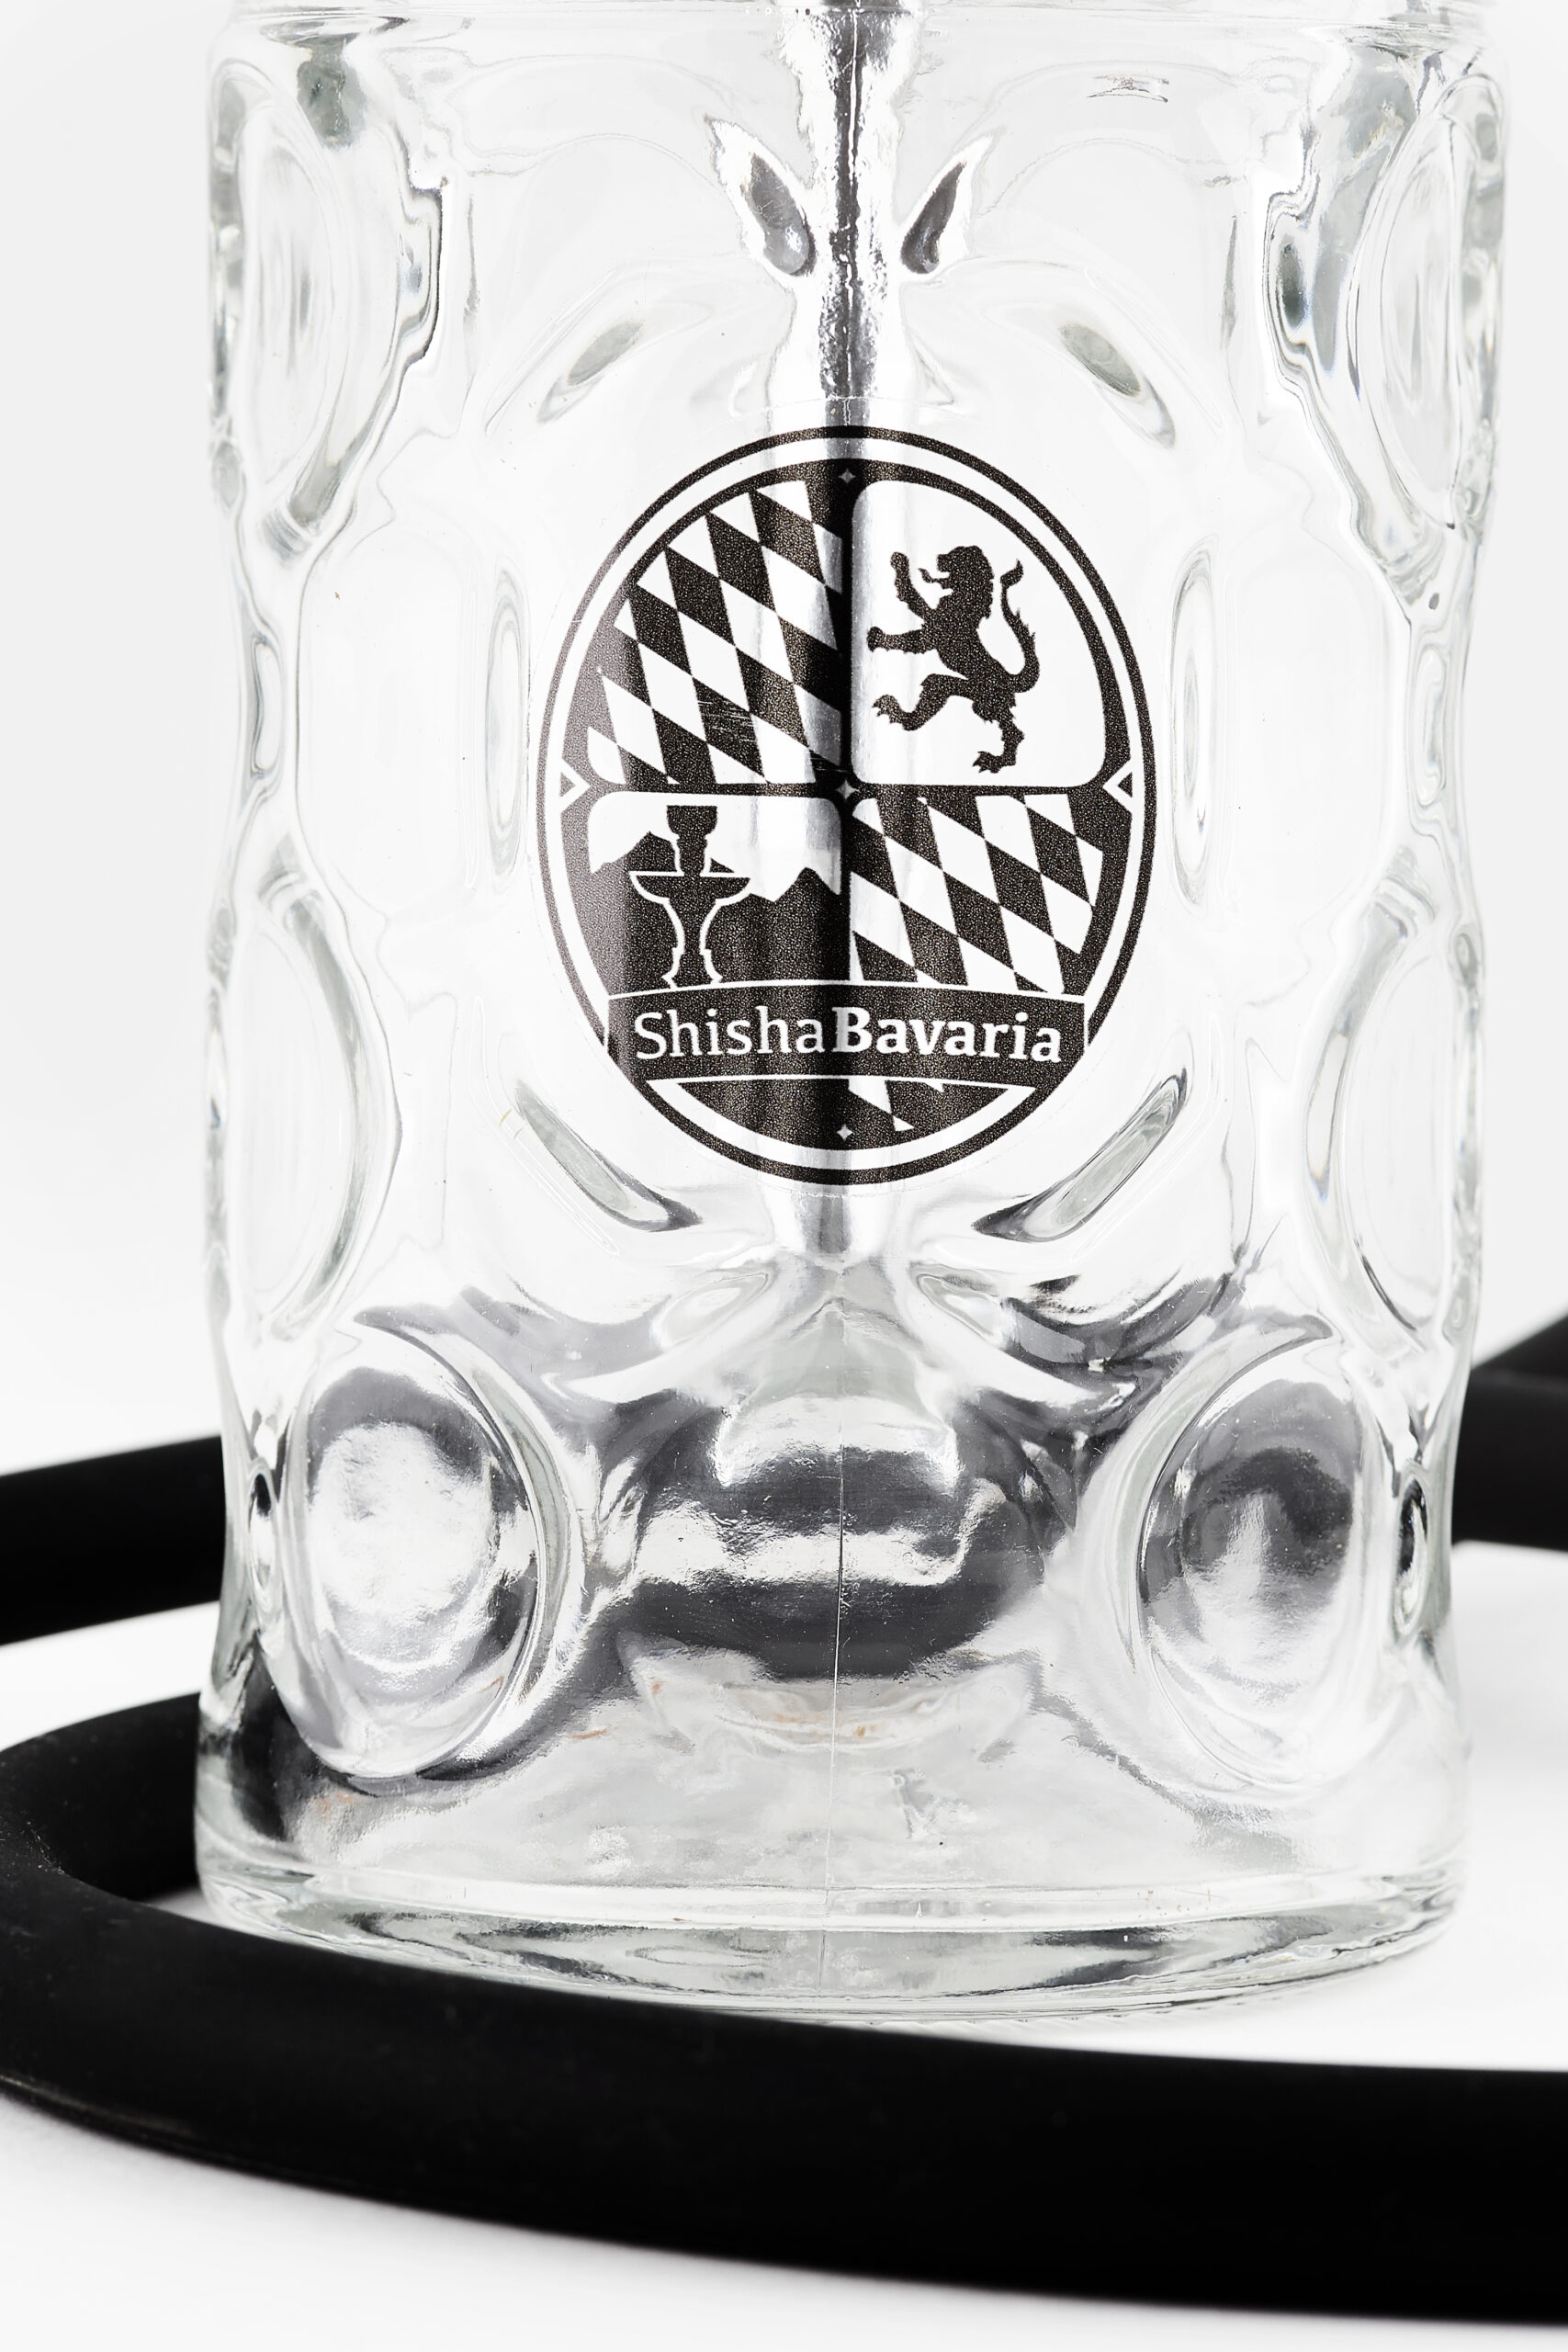 Shisha-Bavaria-Logo-Bowl-Krug.jpg